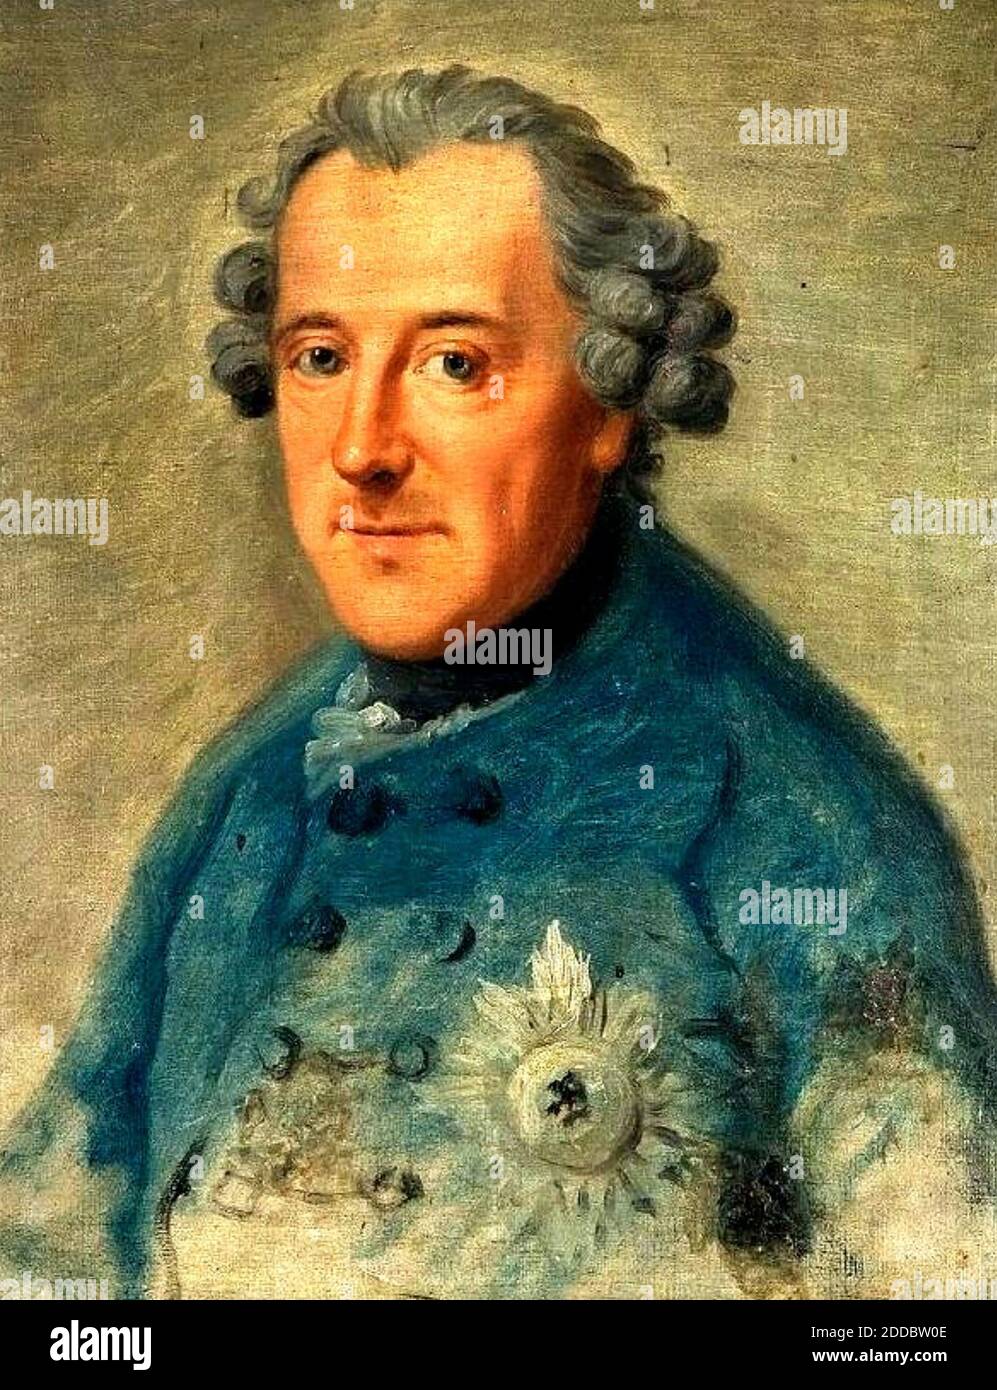 FEDERICO IL GRANDE (1712-1786) re prussiano e capo militare, dipinto da Johann Ziesenis nel 1763. L'unico ritratto per cui Federico pose effettivamente. Foto Stock